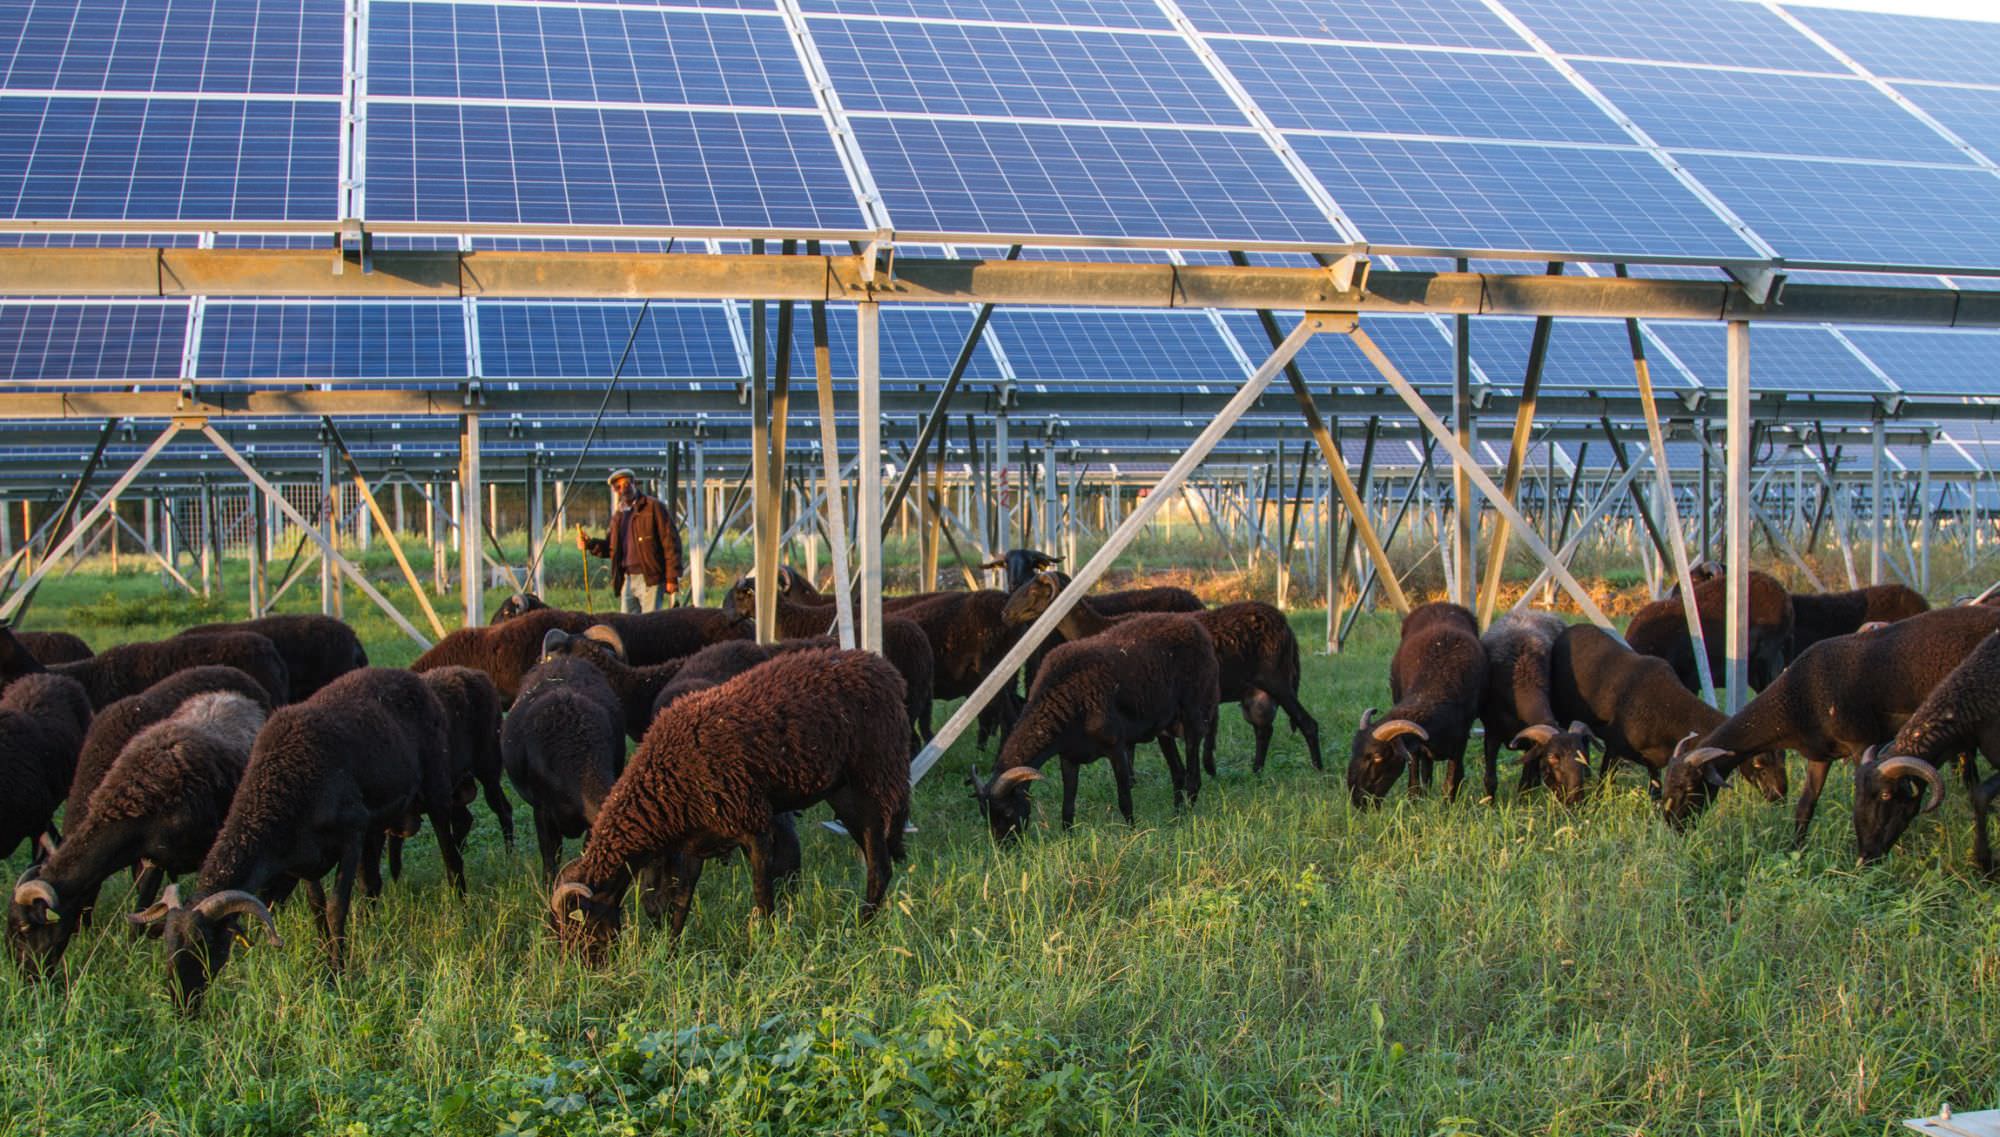 “Stop al consumo di suolo agricolo per impianti fotovoltaici”